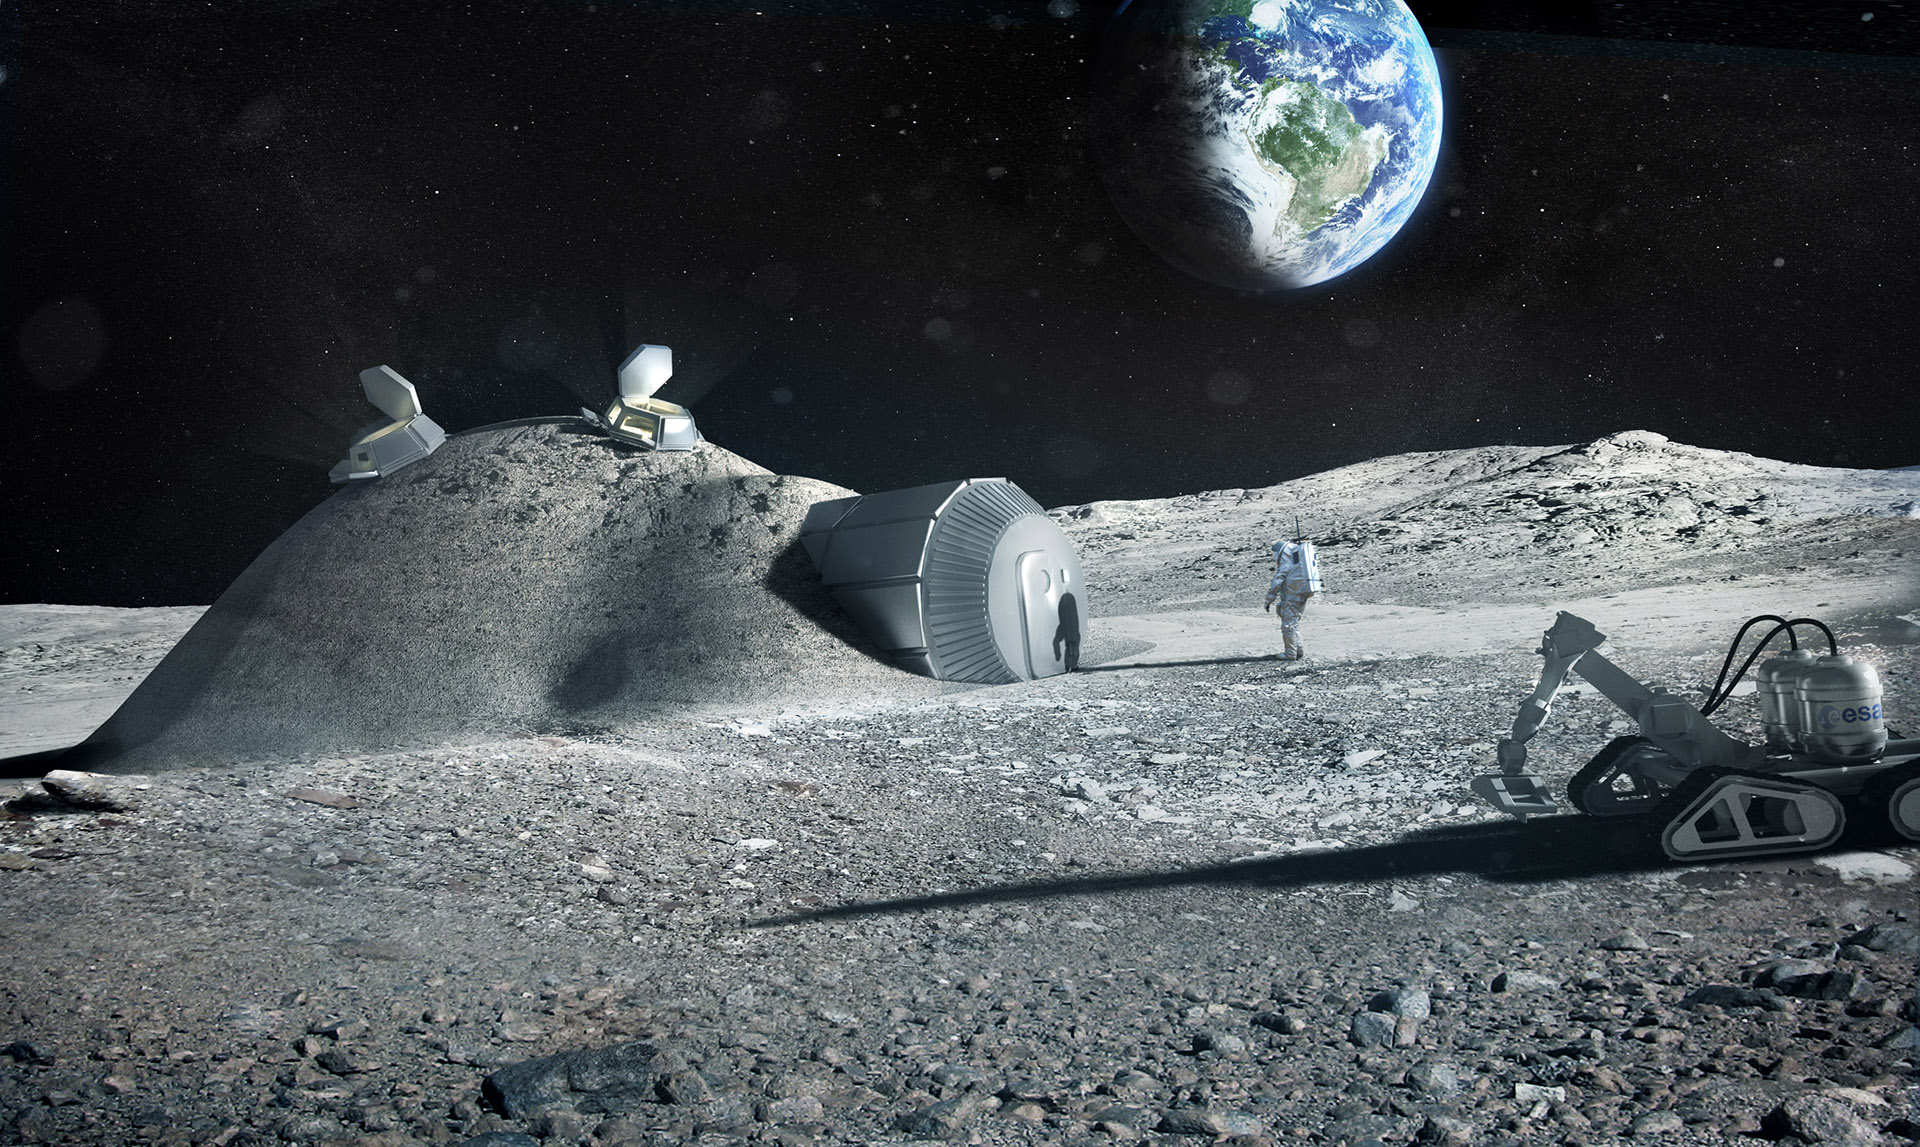 Appal Raad huren ESA - Space for Kids - Terug naar de maan!